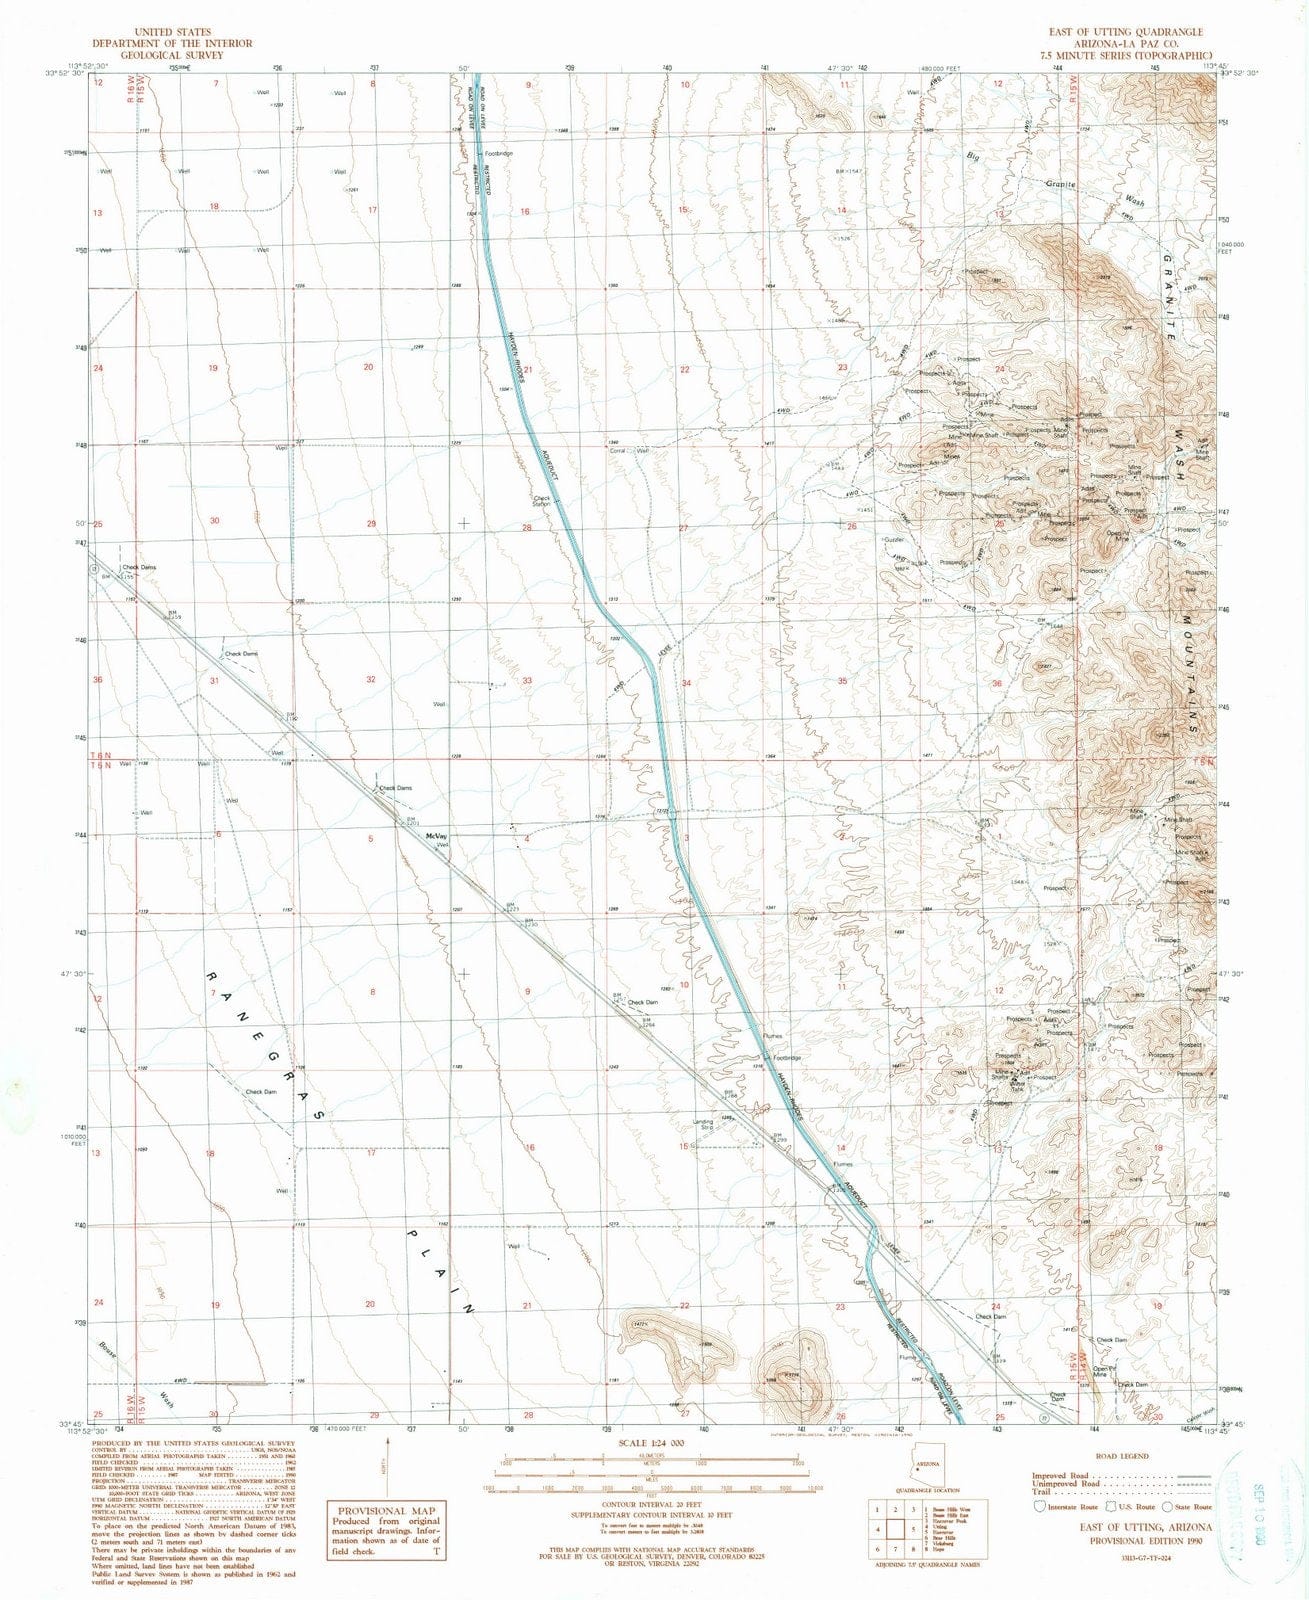 1990 East of Utting, AZ - Arizona - USGS Topographic Map